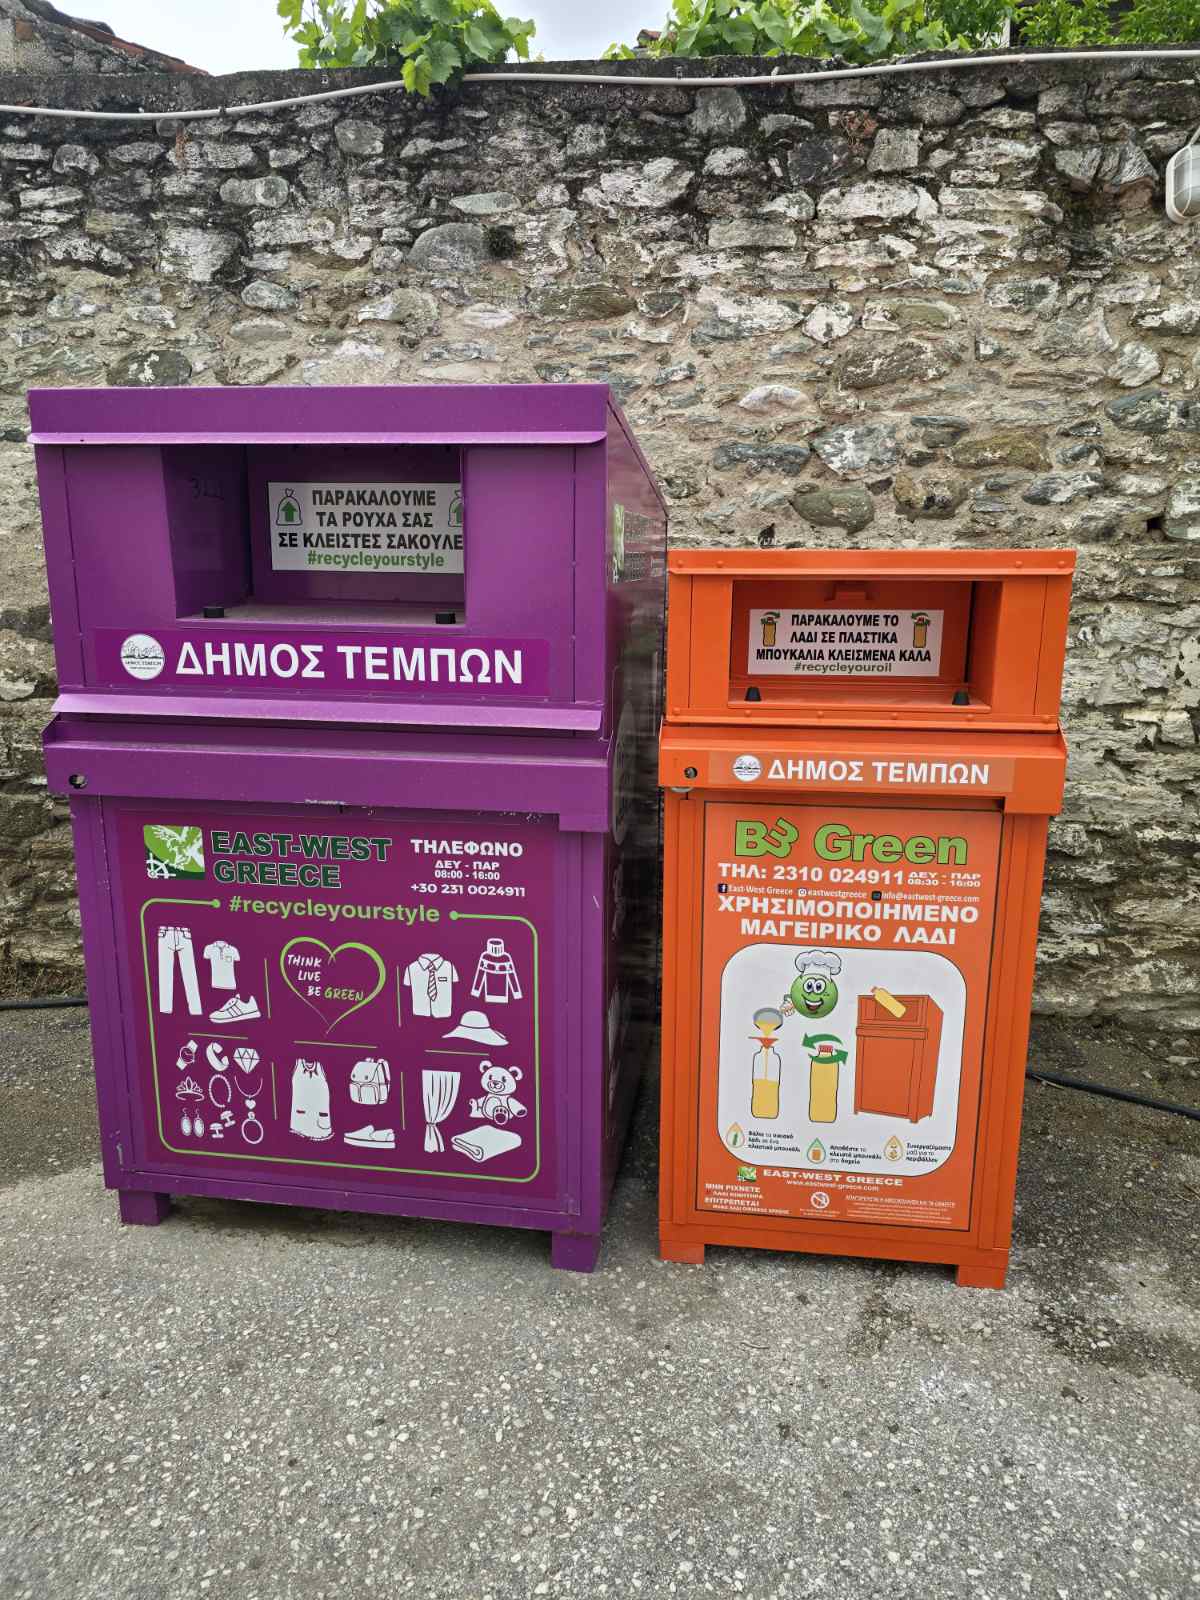 Δήμος Τεμπών: Εκκίνηση του προγράμματος χρησιμοποιημένων μαγειρικών ελαίων με σκοπό την ανακύκλωσή τους